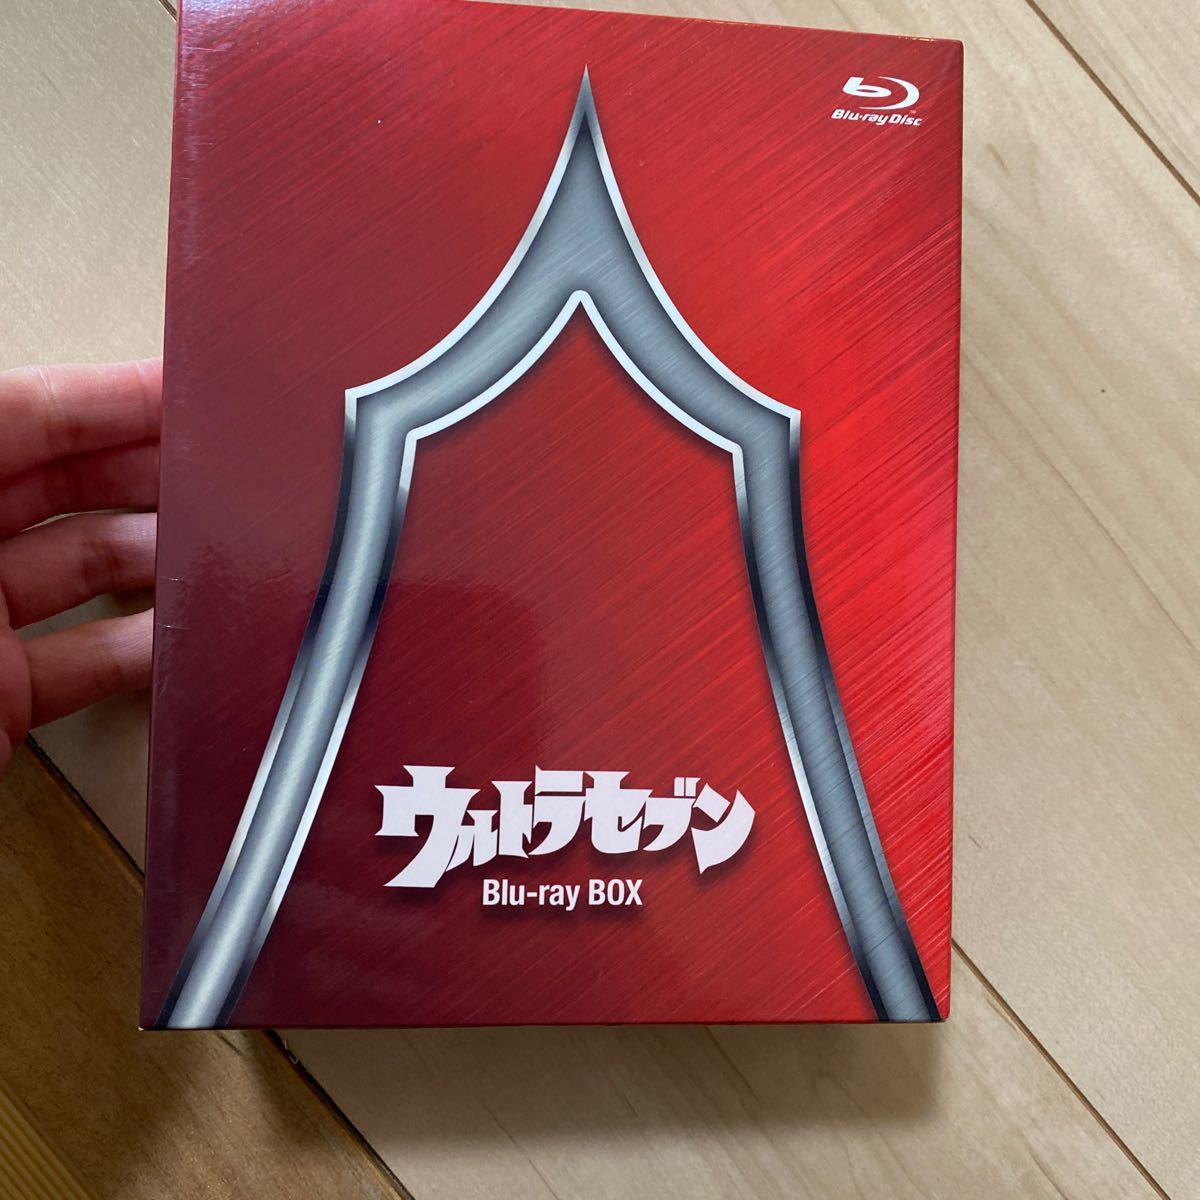 ウルトラセブン Blu-ray BOX Standard Edition (Blu-ray Disc